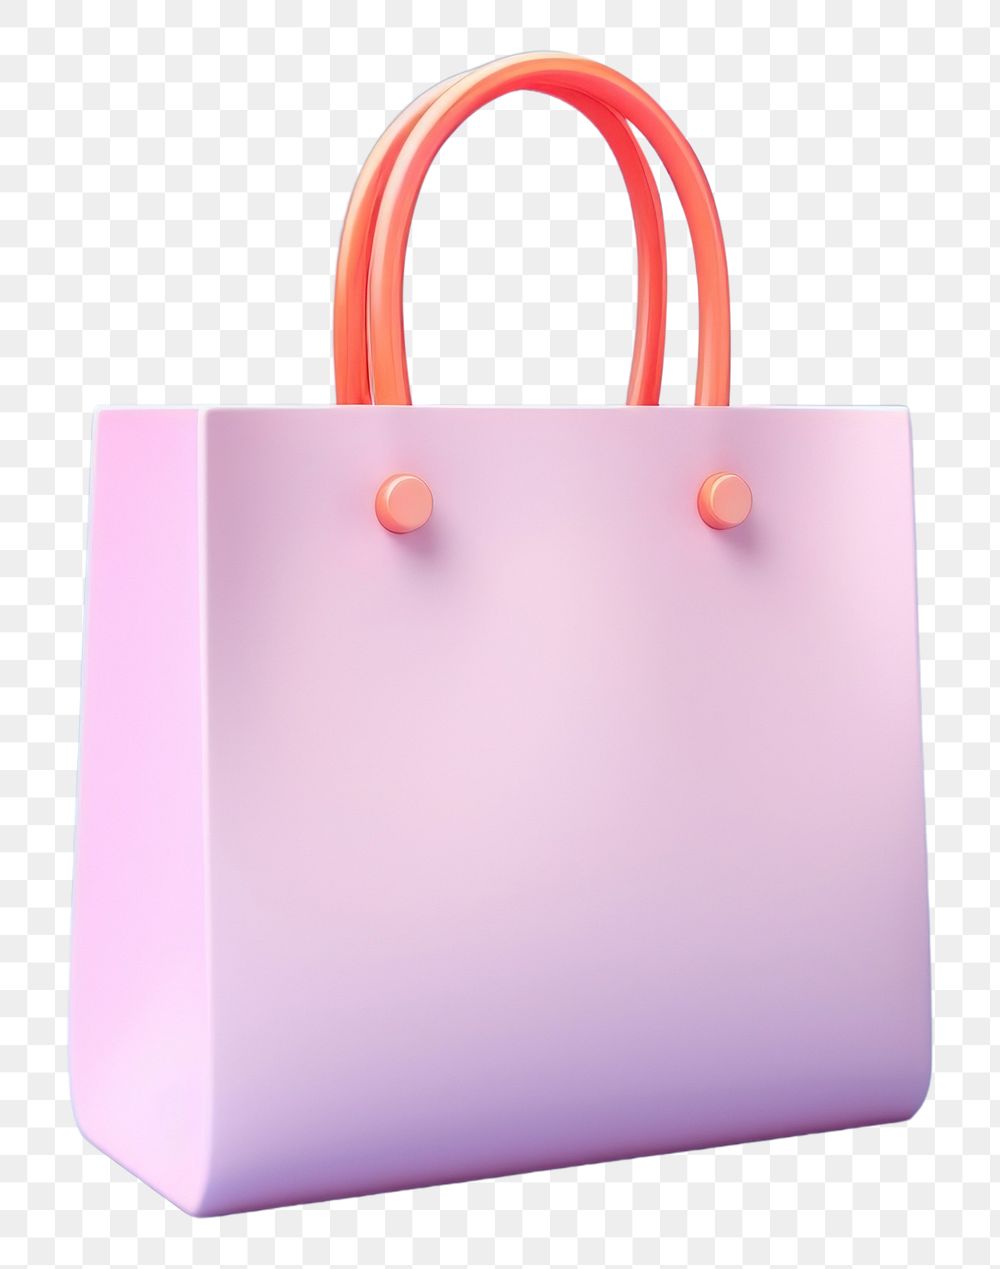 PNG Bag handbag purse shopping bag. AI generated Image by rawpixel.